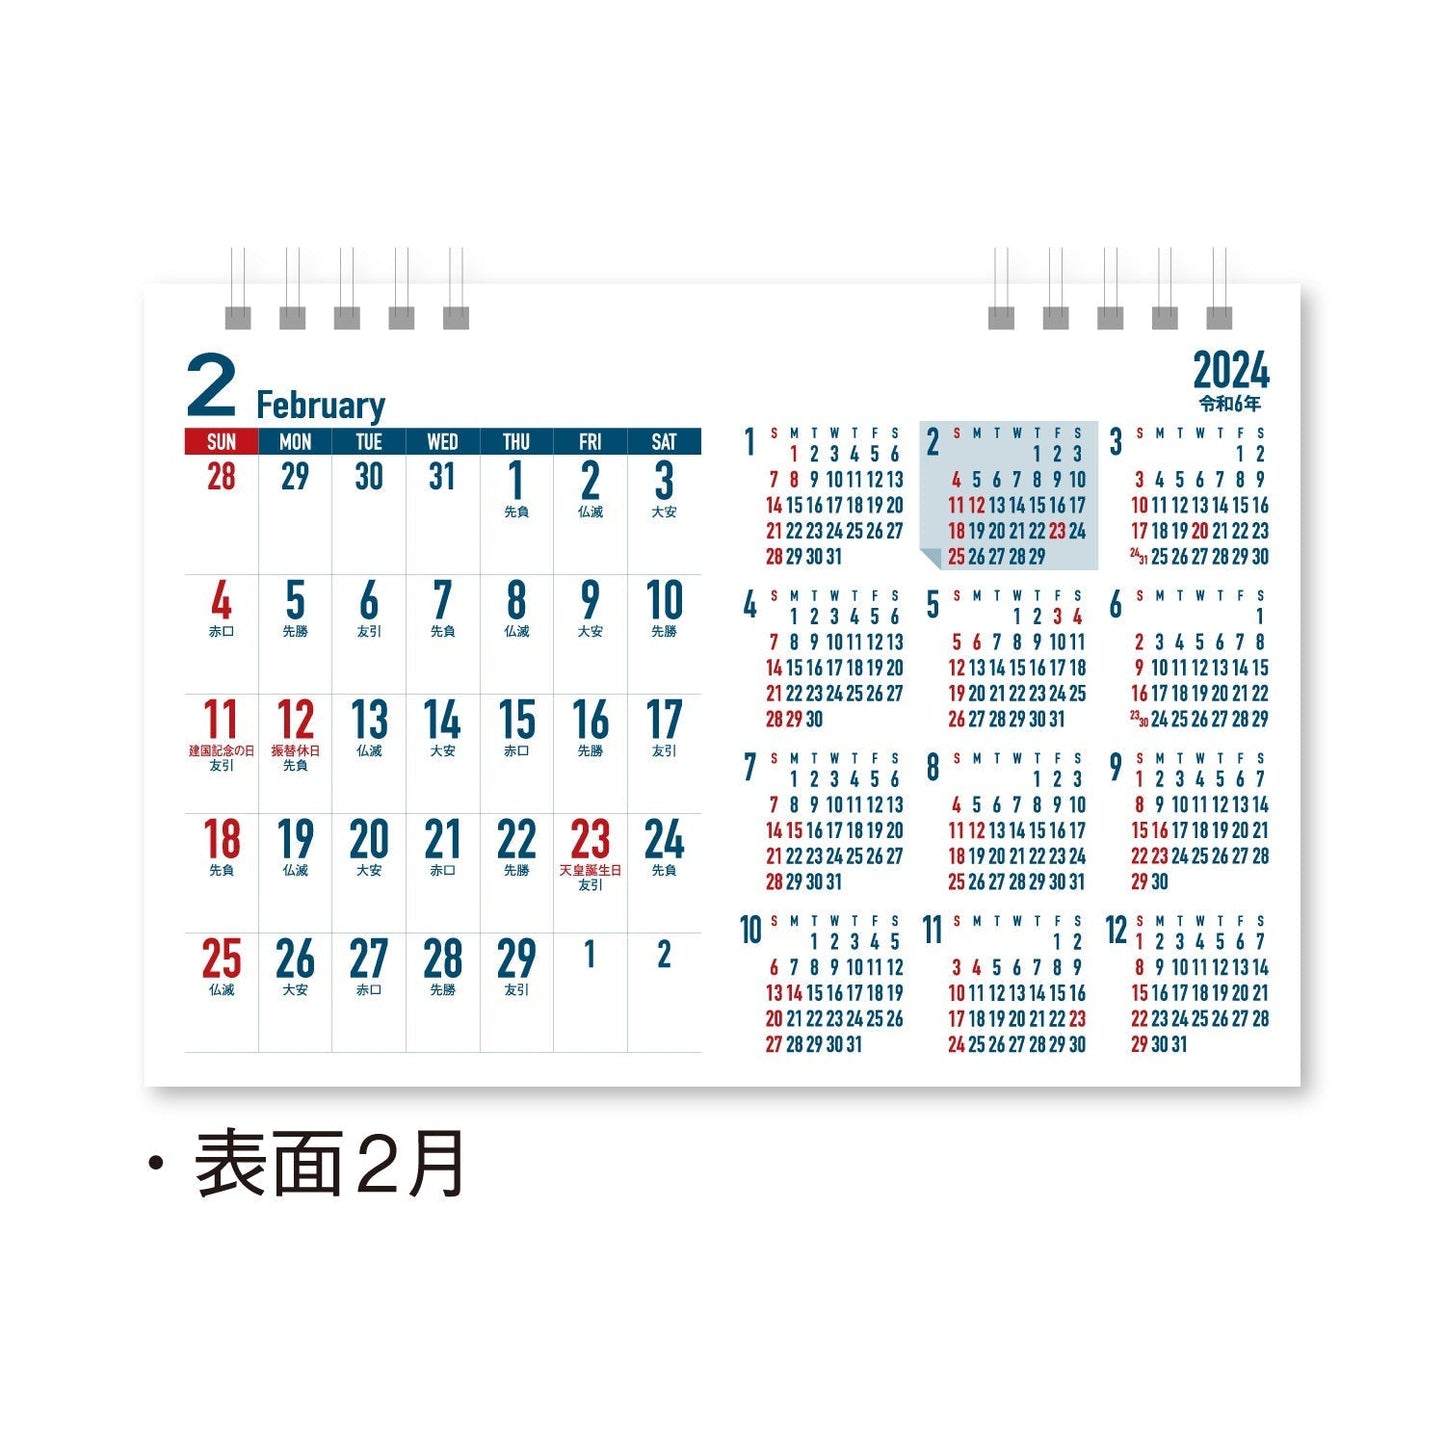 NK-511 卓上カレンダー ビジネスプラン（年間カレンダー付）